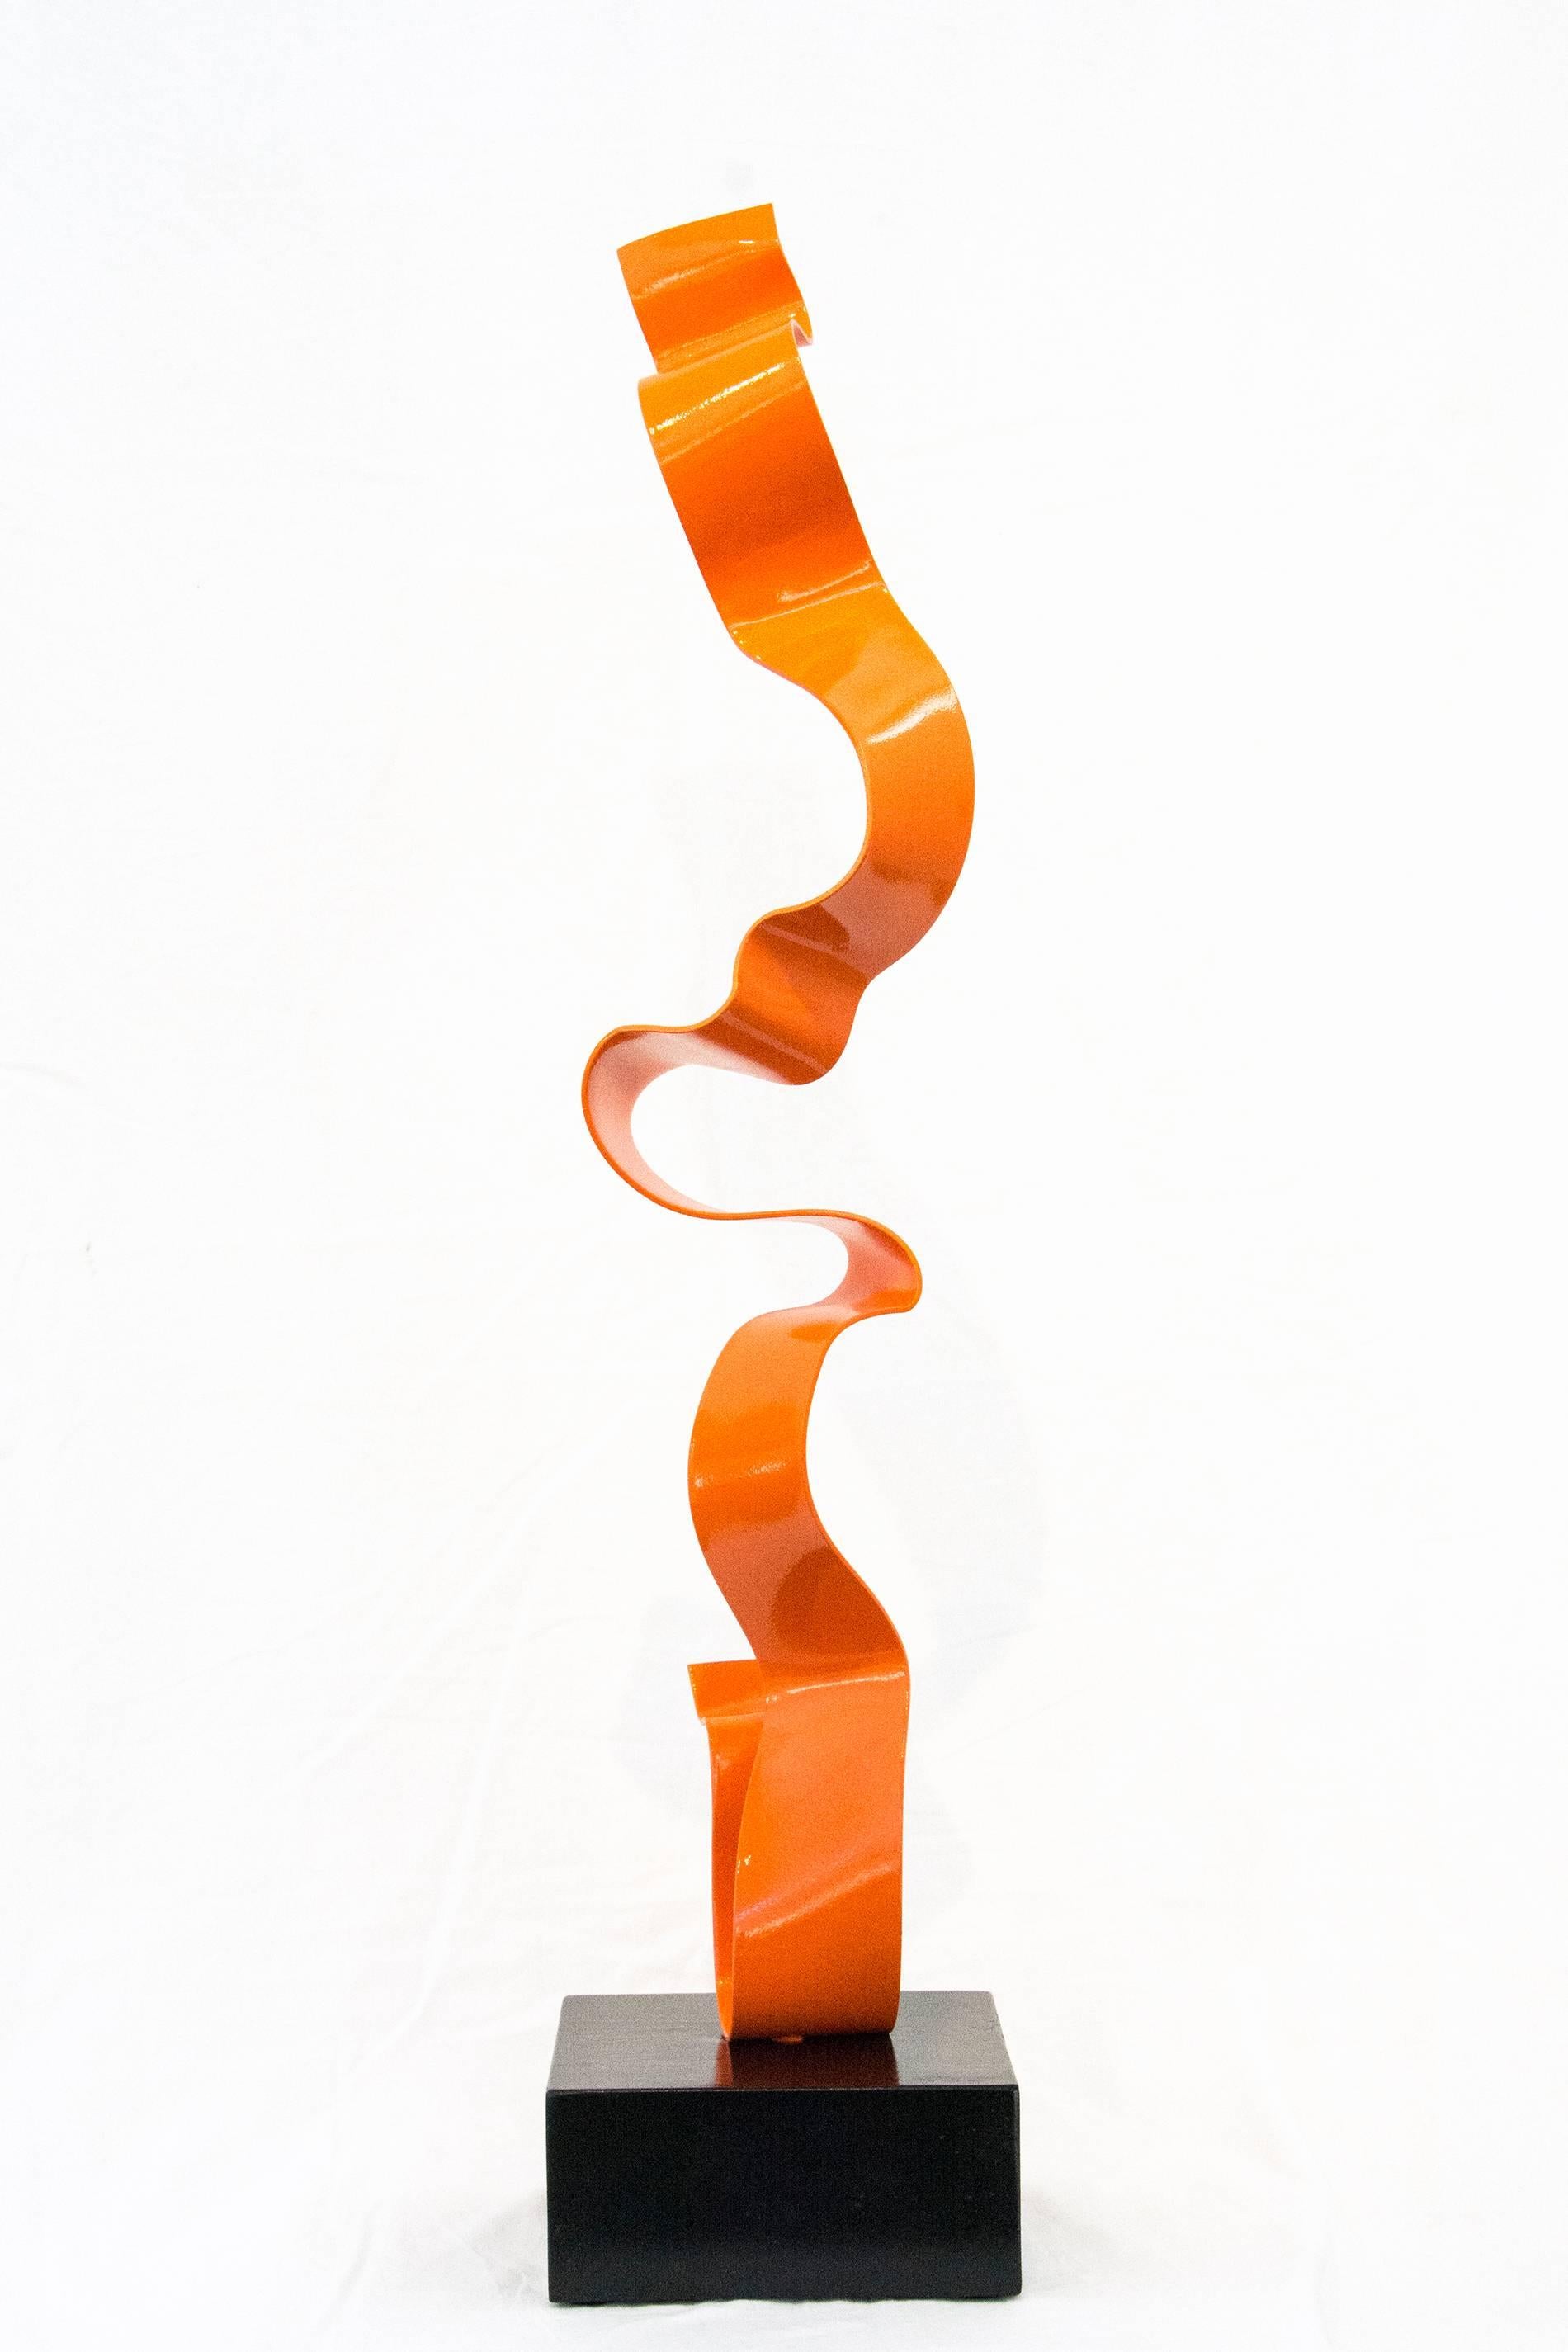 Unwound Orange - Contemporary Sculpture by Mark Birksted